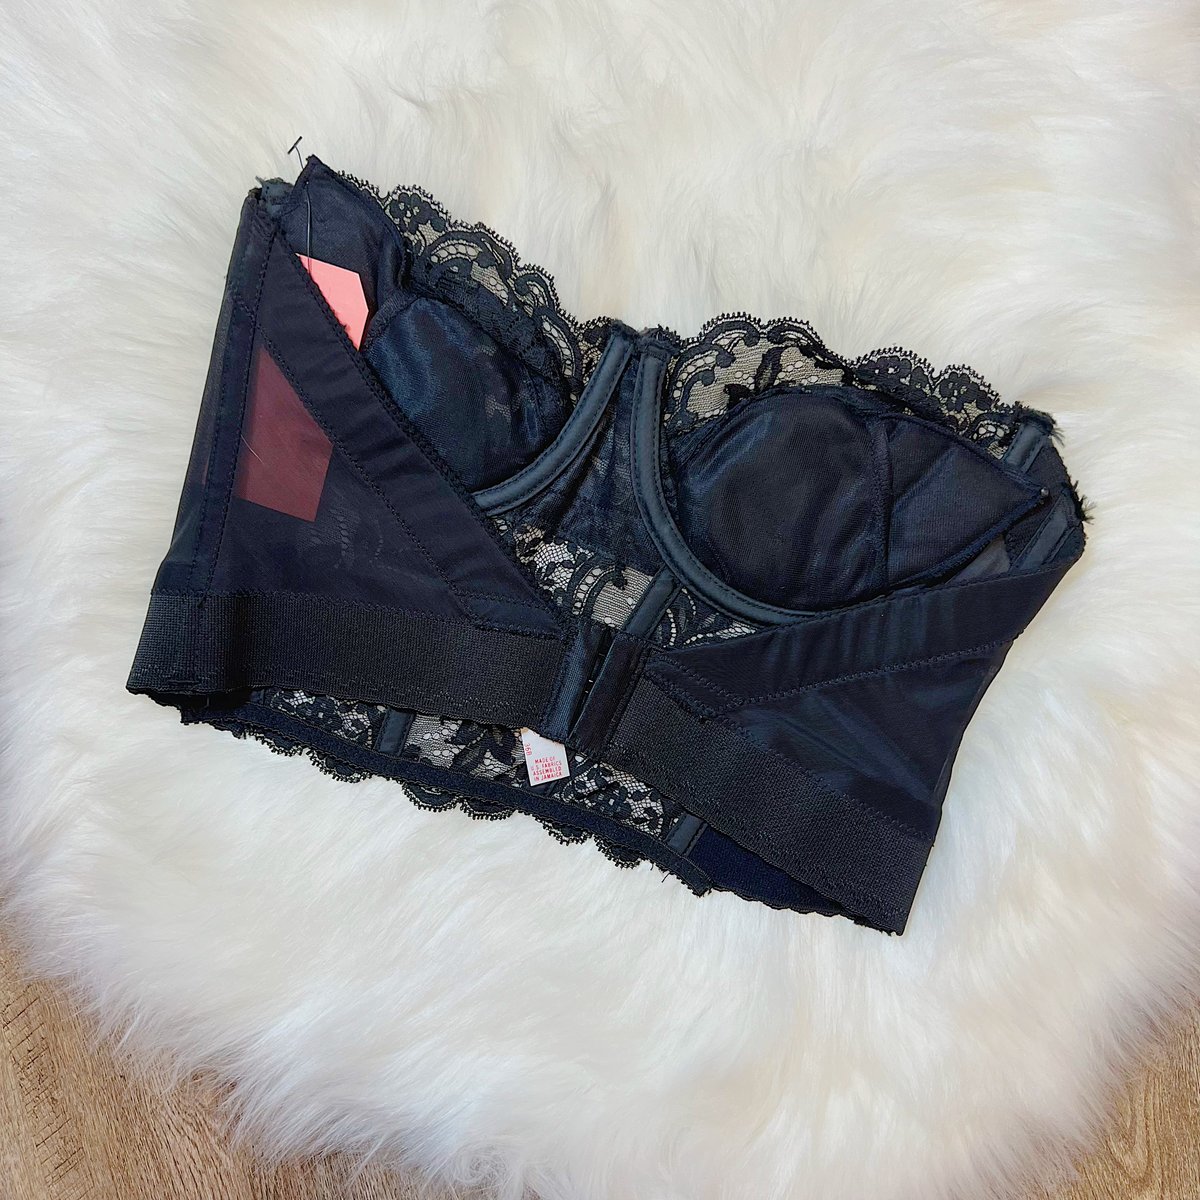 Size 36B/34C - Vintage 1980s Fleur de Lace Smoothie Black Lace